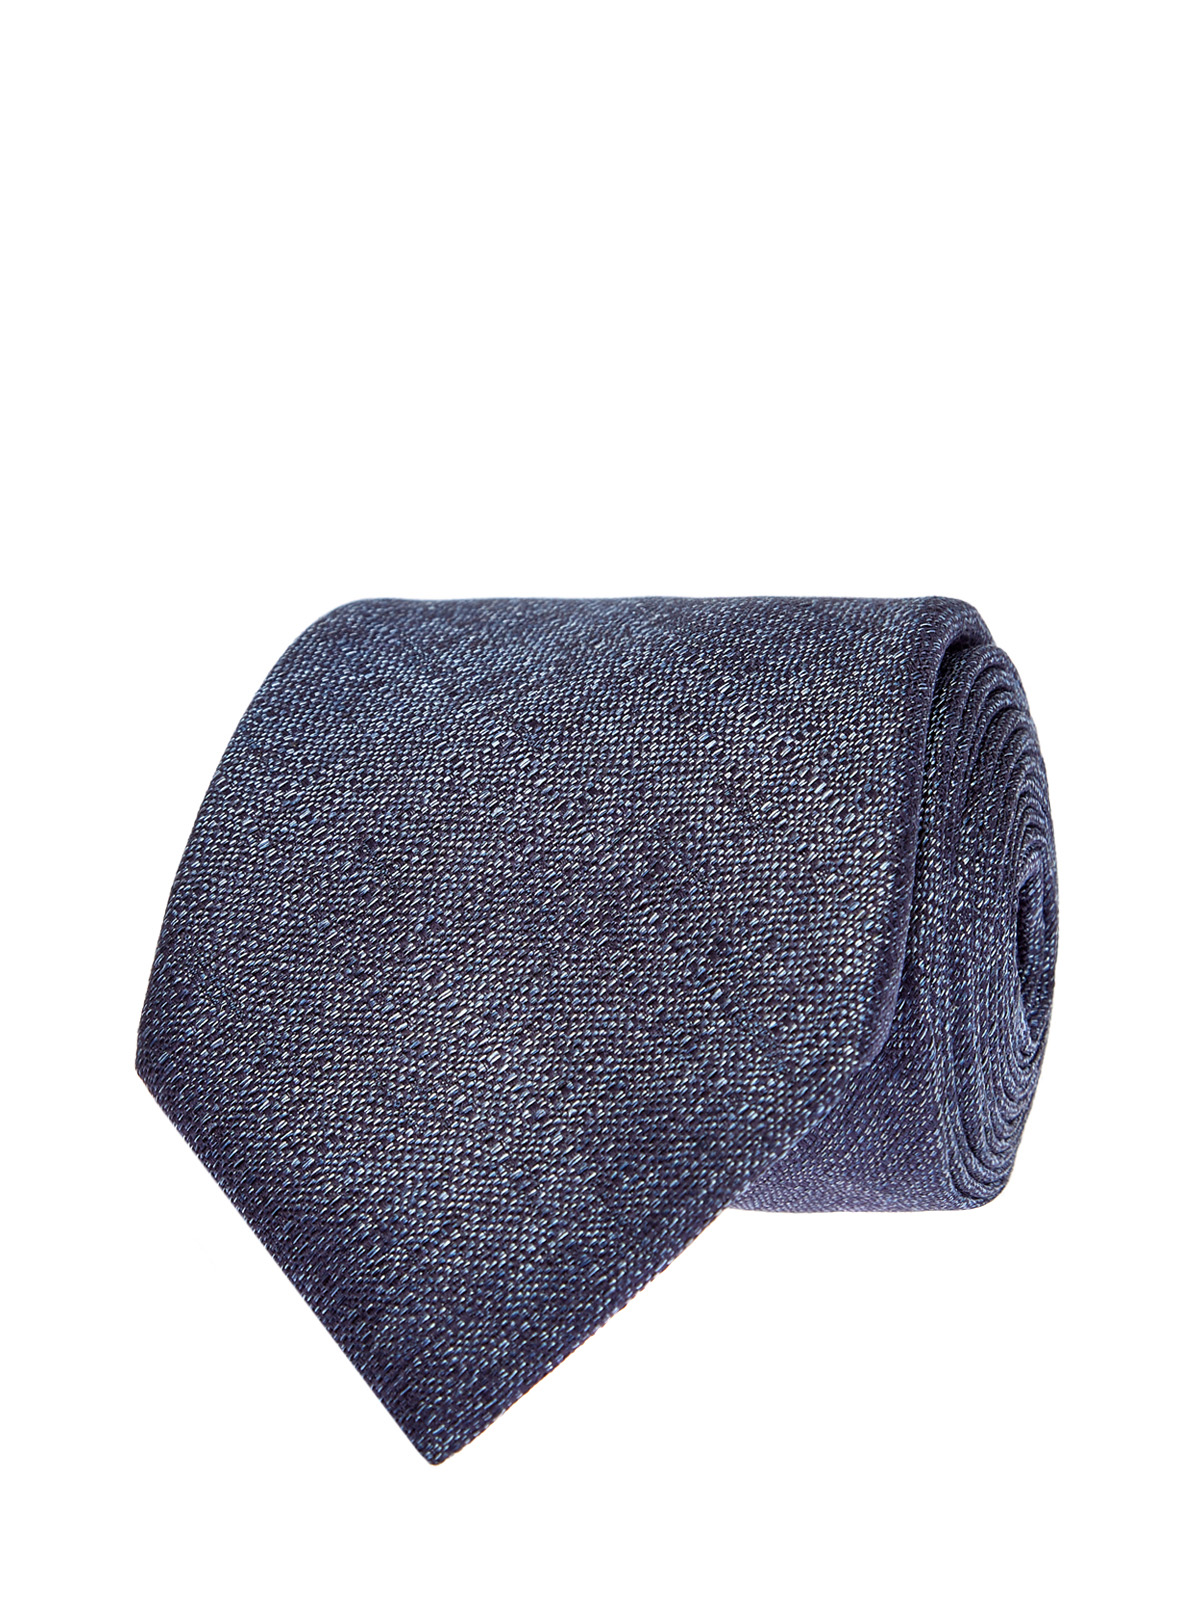 Шелковый галстук с жаккардовым принтом в синих тонах CANALI, цвет синий, размер 42;44;46;48;40